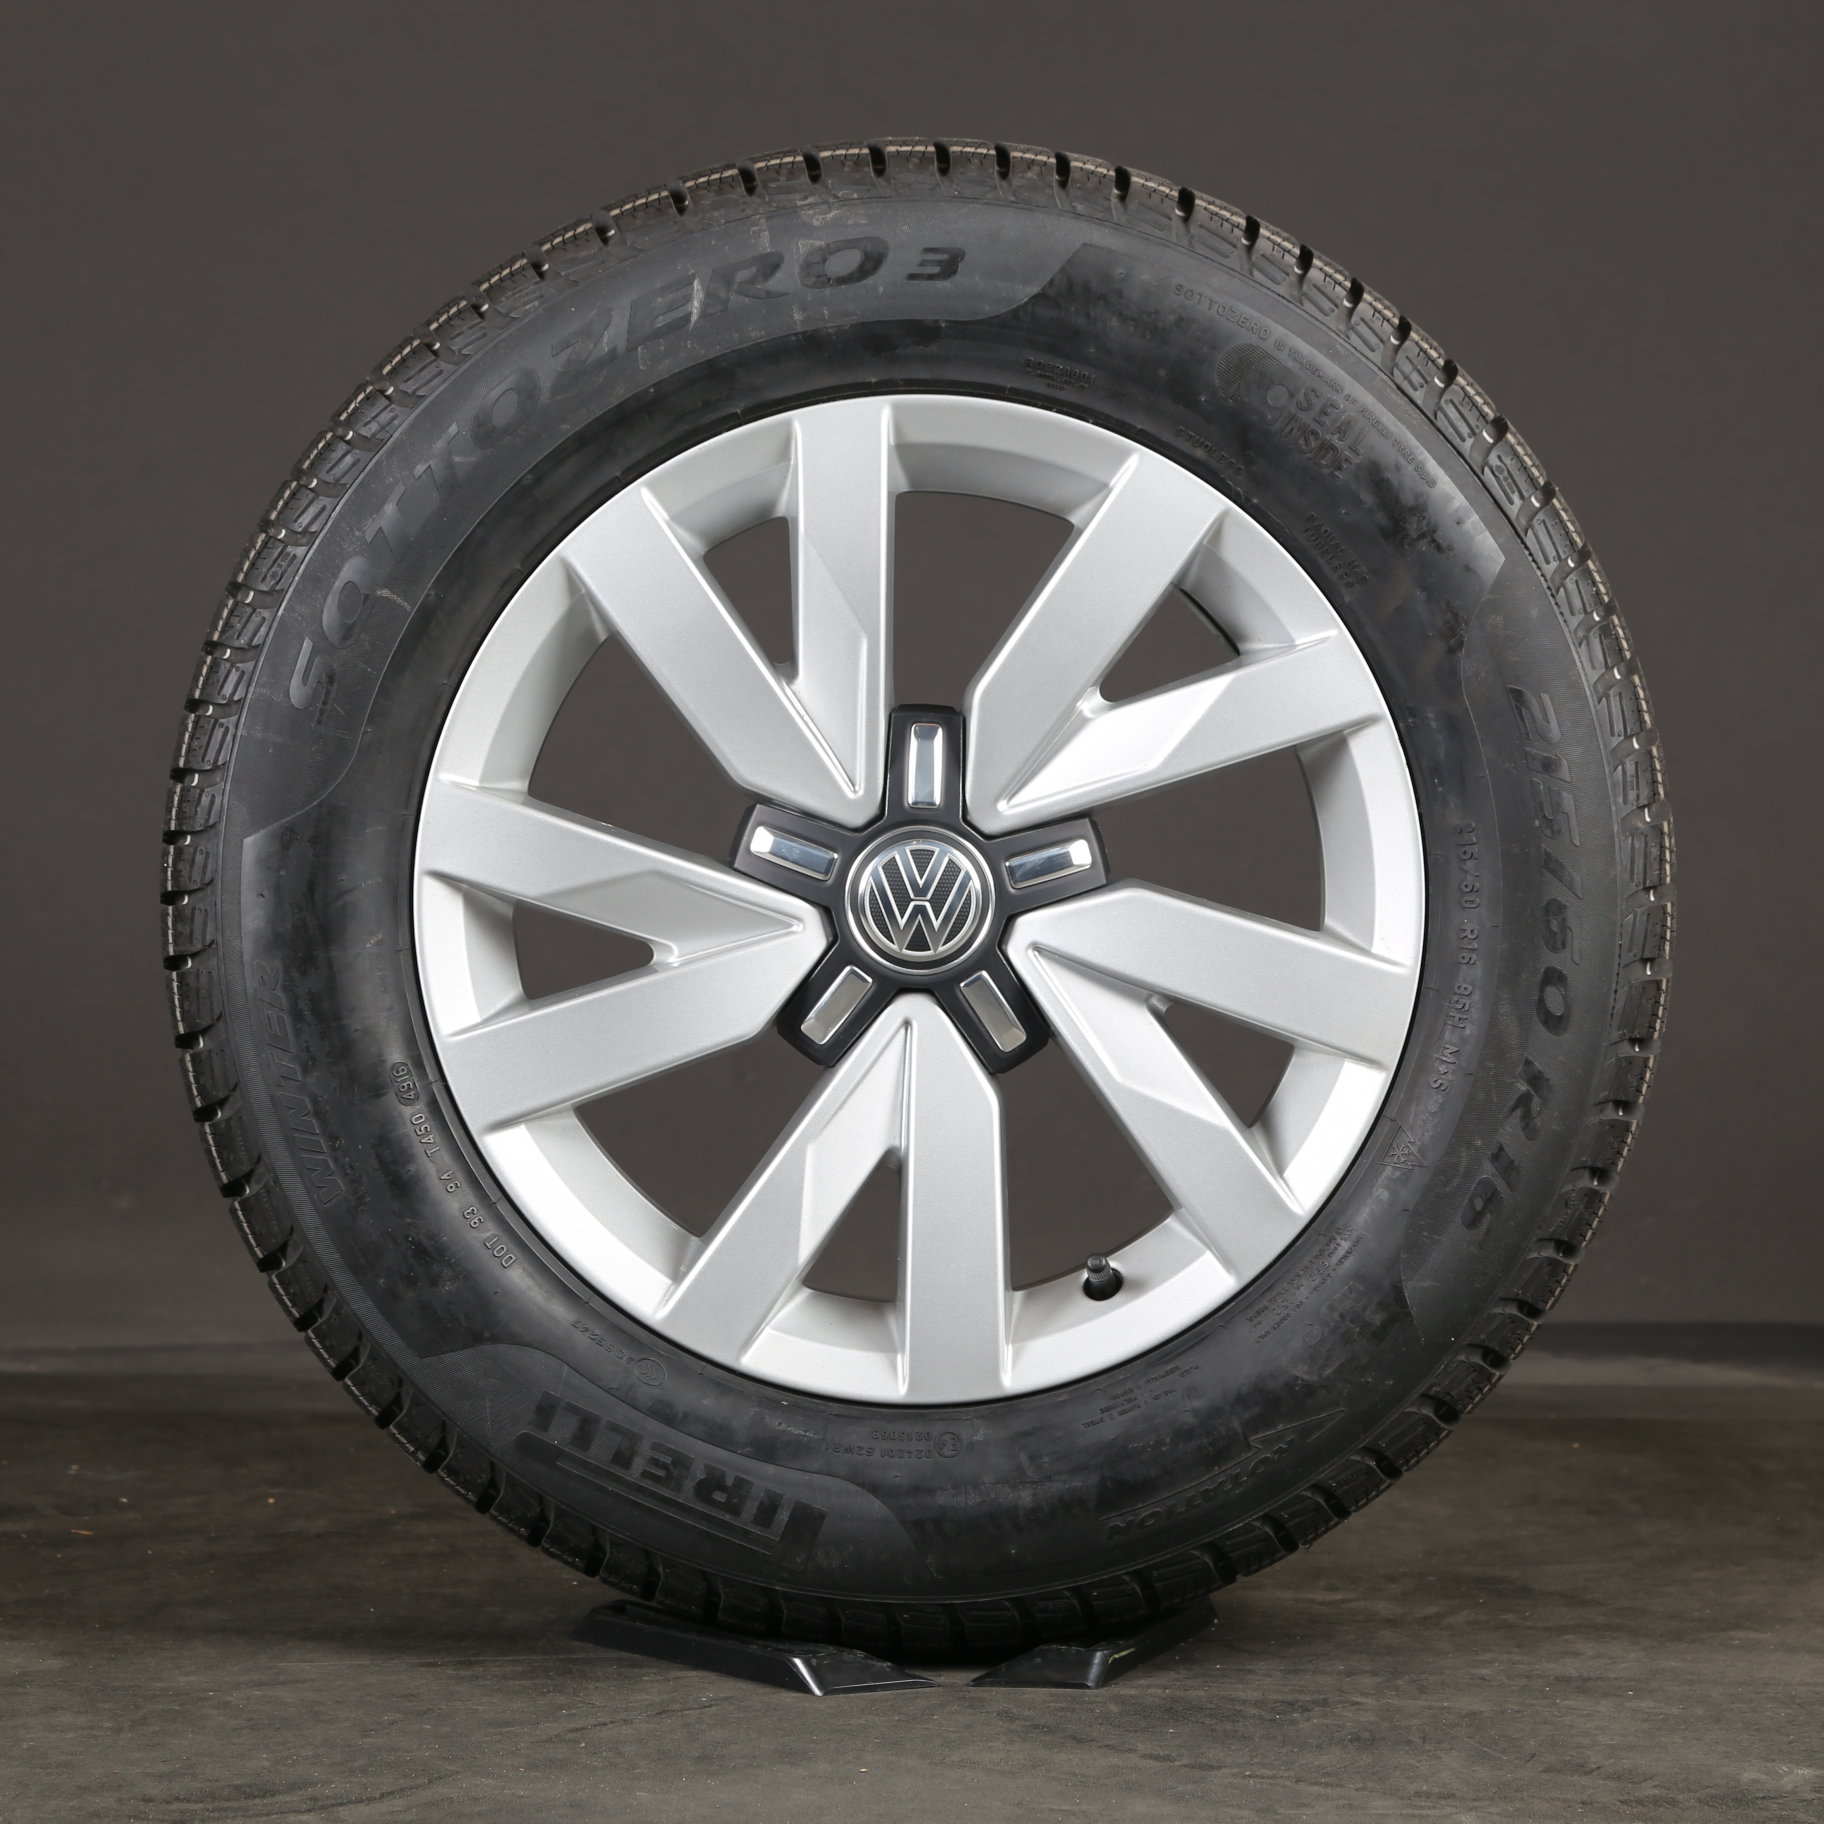 16 pulgadas Aragón ruedas de invierno llantas originales VW Passat B8 3G0601025A neumáticos de invierno